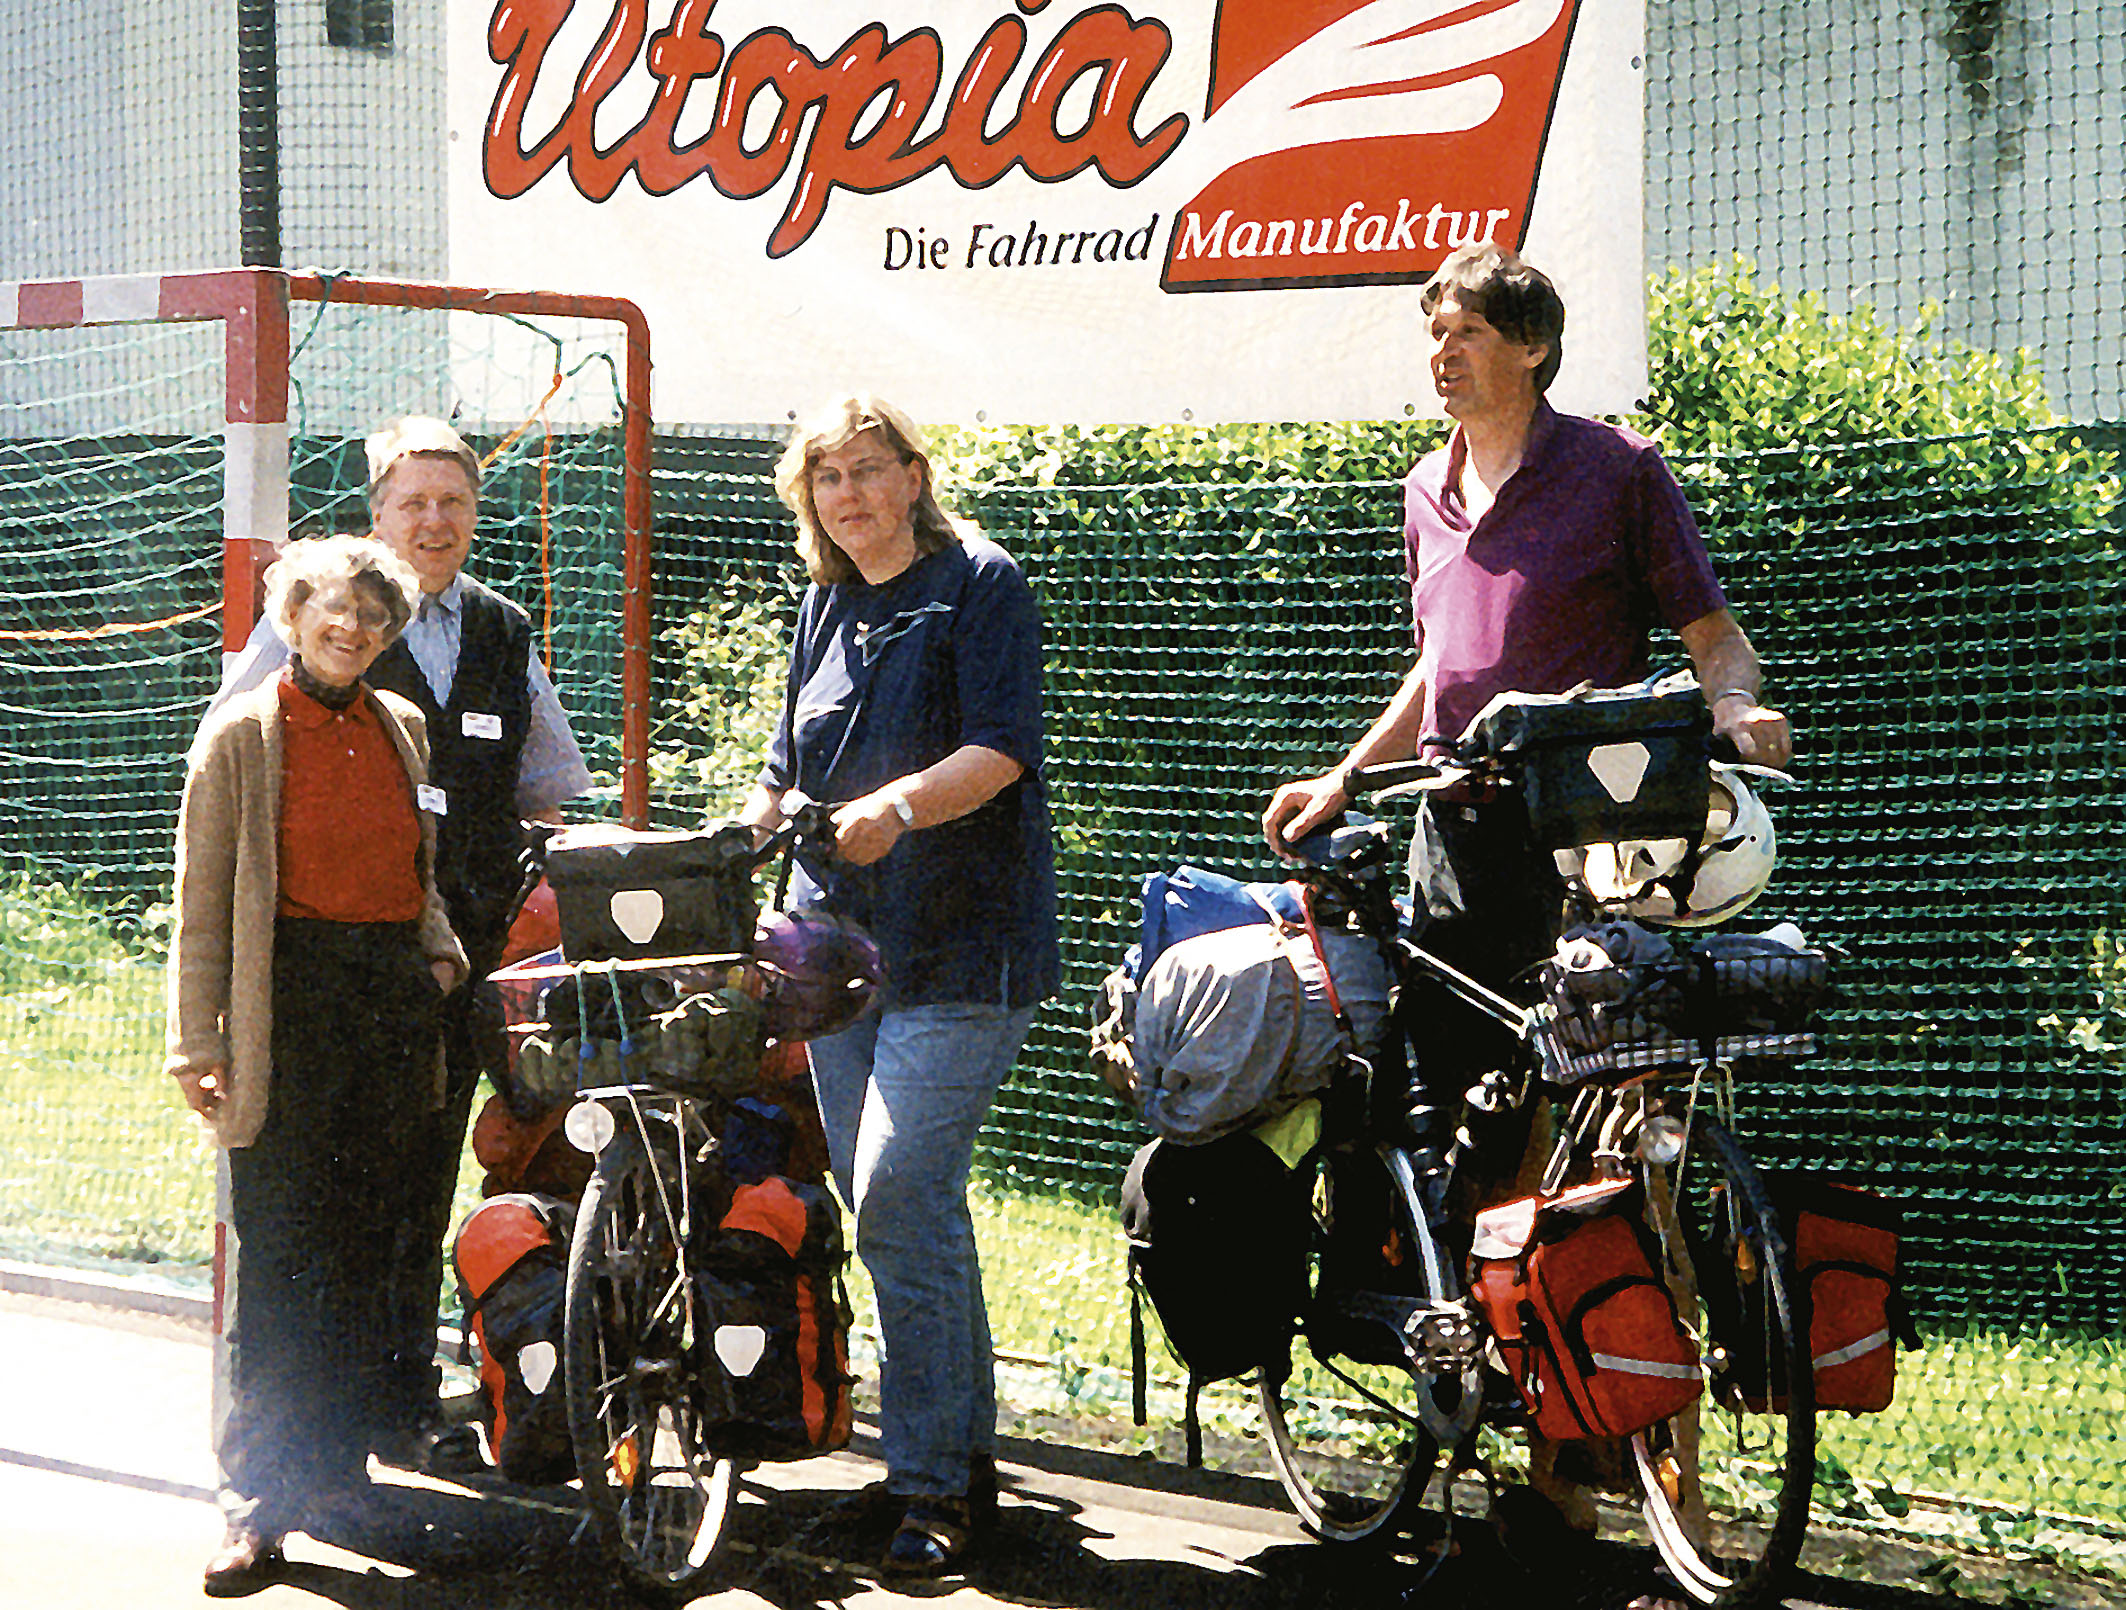 Familie Knipper in voller Reiseausstattung zu Besuch am Utopia Stand